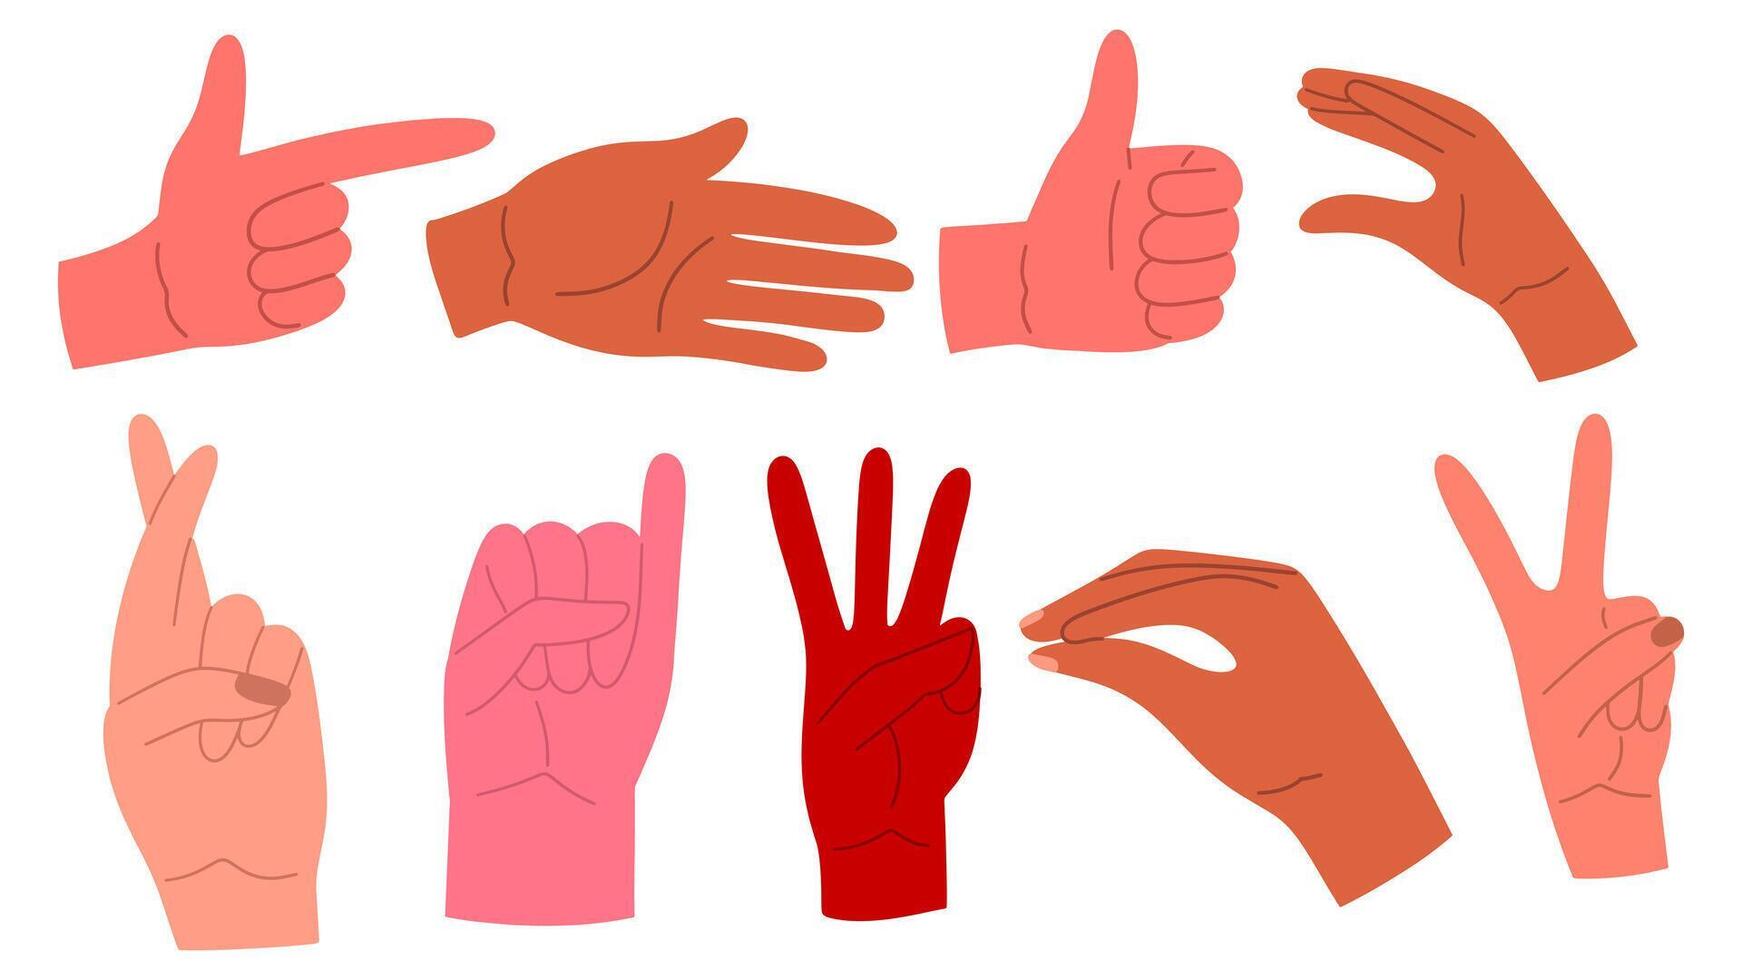 conjunto de el diferente gestos manos en variedad posa hembra y masculino manos. dedos cruzado, paz símbolo, meñique arriba. ilustración en dibujos animados estilo. vector